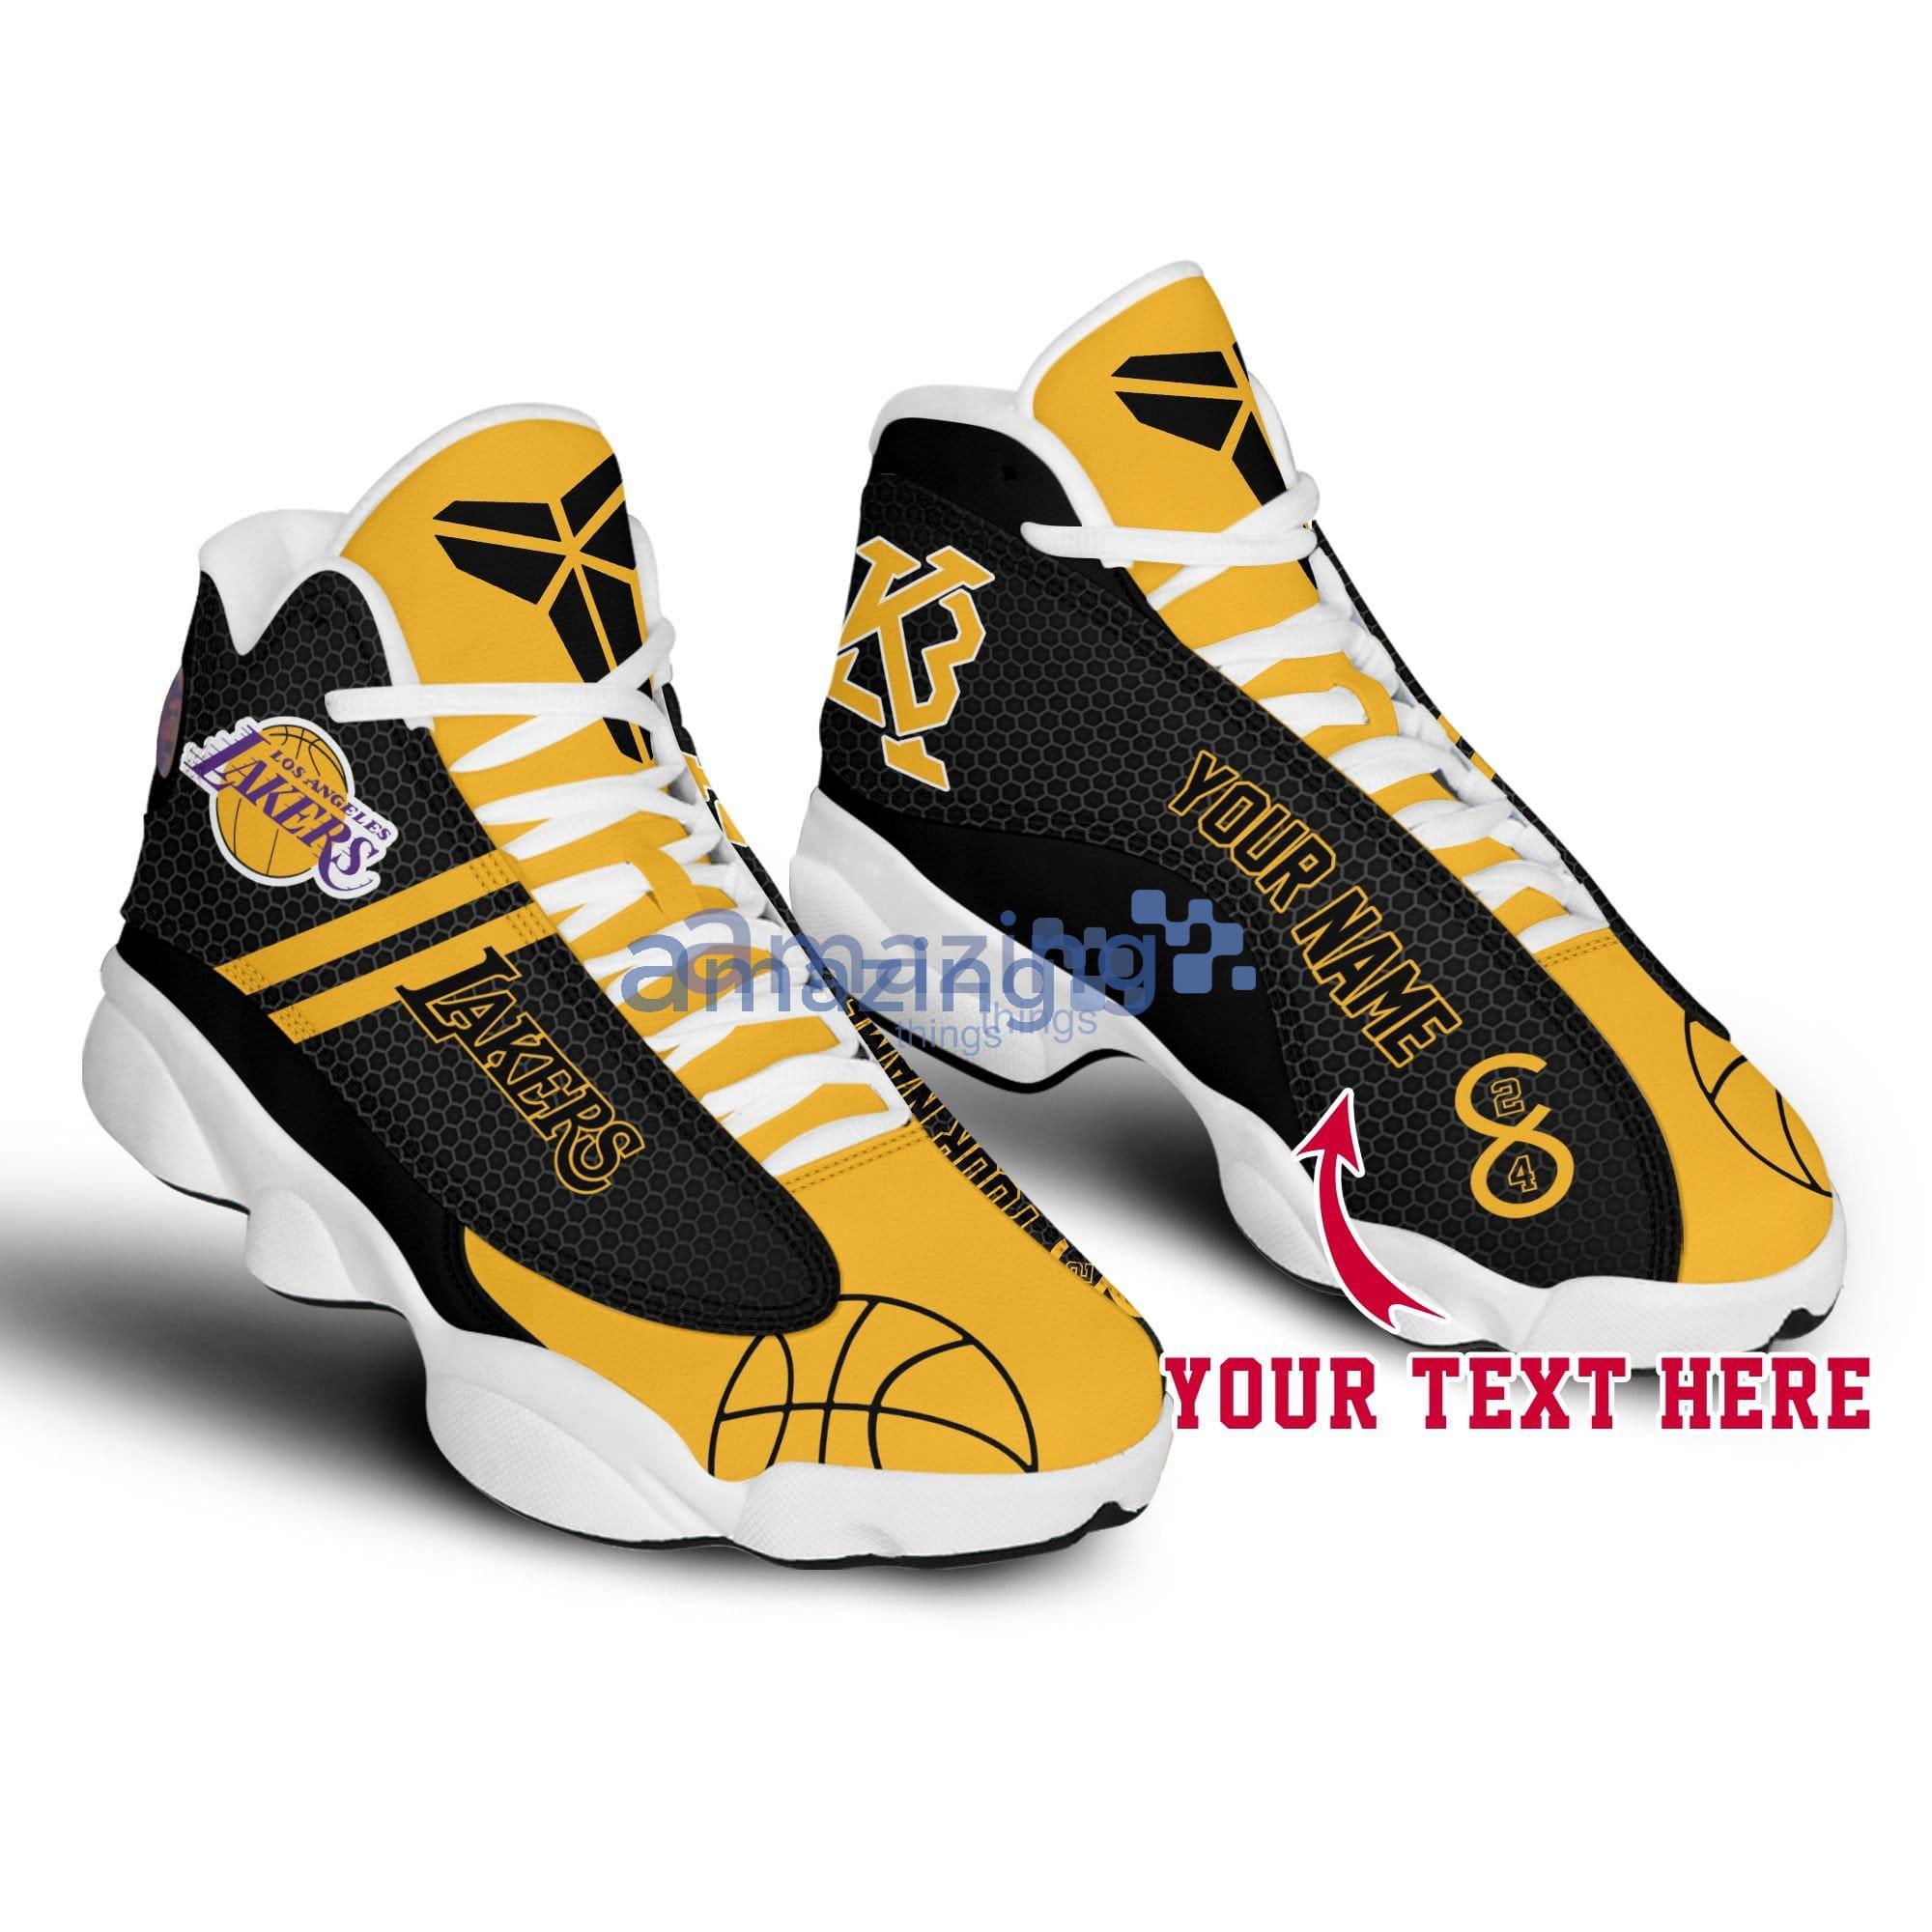 Kobe Bryant ver 1 Air Jordan 13 sneaker - USALast